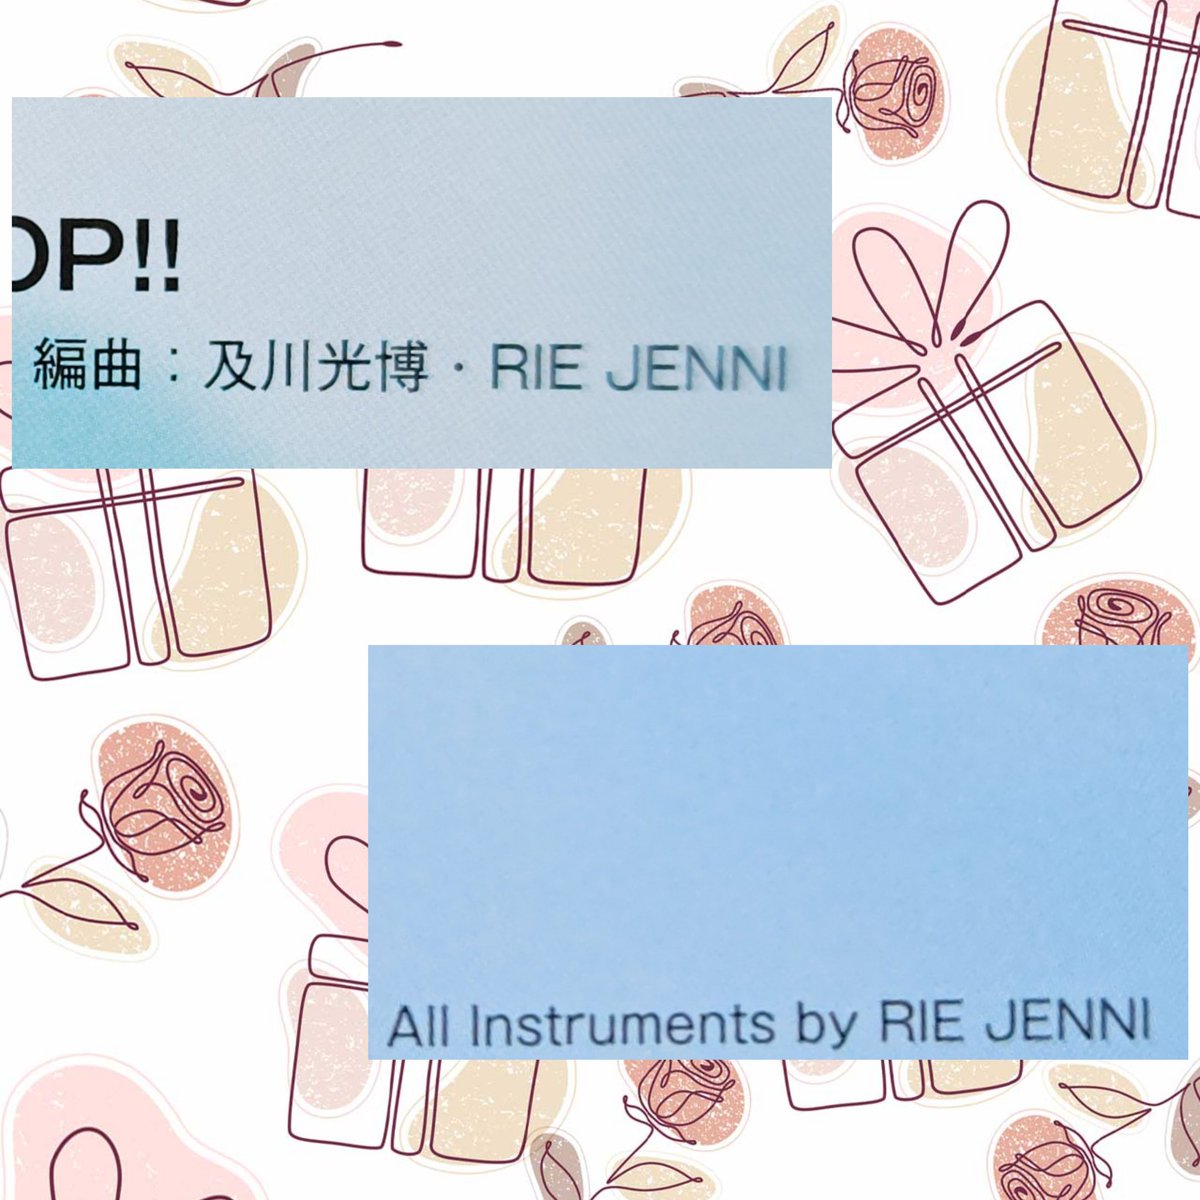 ｢DON'T THINK POP!!｣ 💿にRIE JENNIが、ちゃんとクレジットされてて···😭😭😭💕 1曲でも、どんな形でも··· 💿携わってくれてメチャ嬉しいです😊🎶 ⭐️様のアルバムにRIE JENNIのクレジットが··· 私の中ではメチャ新鮮な感じです😆🎶